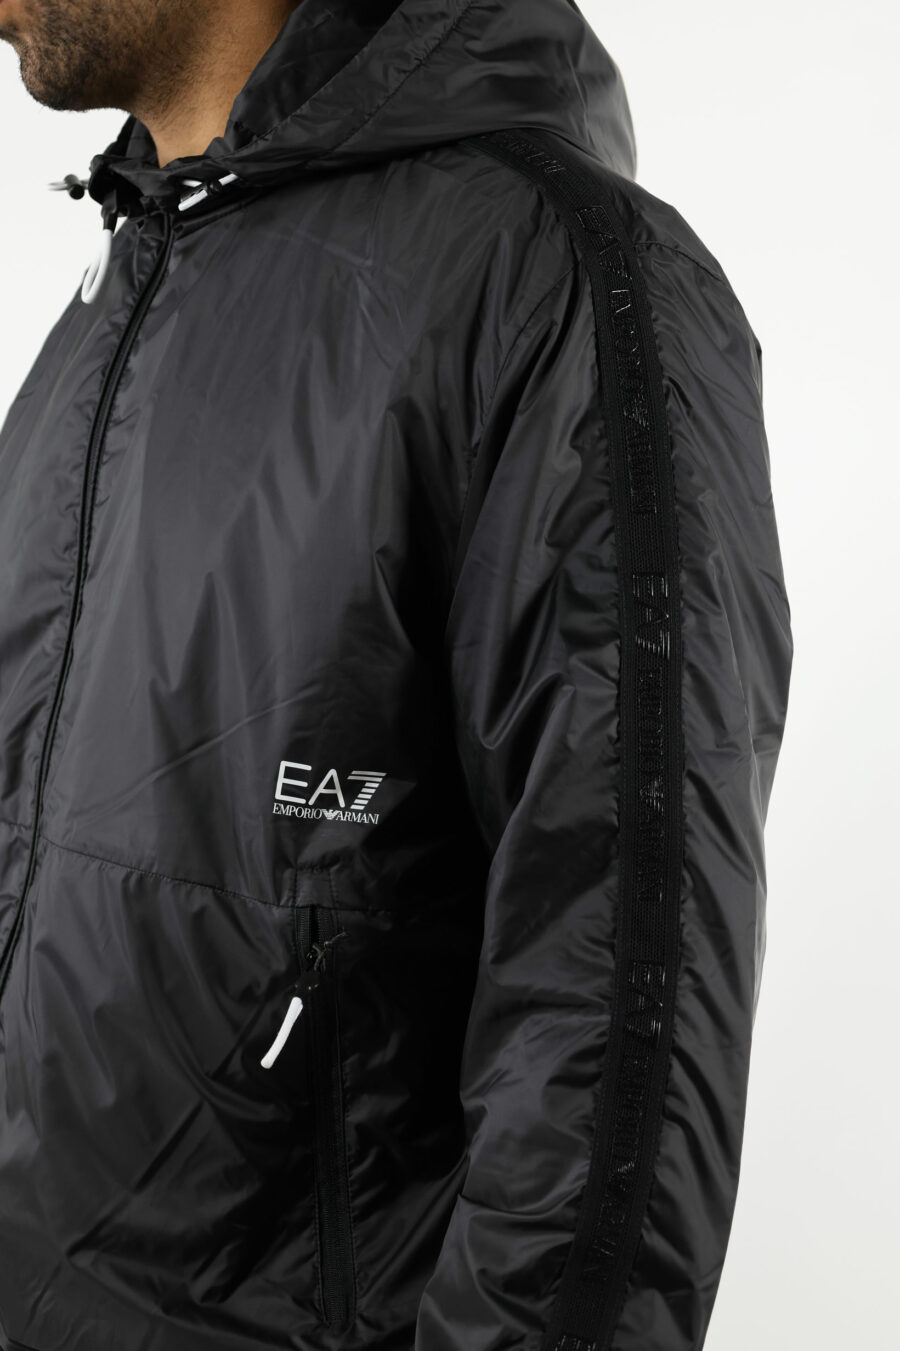 Veste imperméable noire avec capuche, lignes latérales blanches et logo "lux identity" - 110956